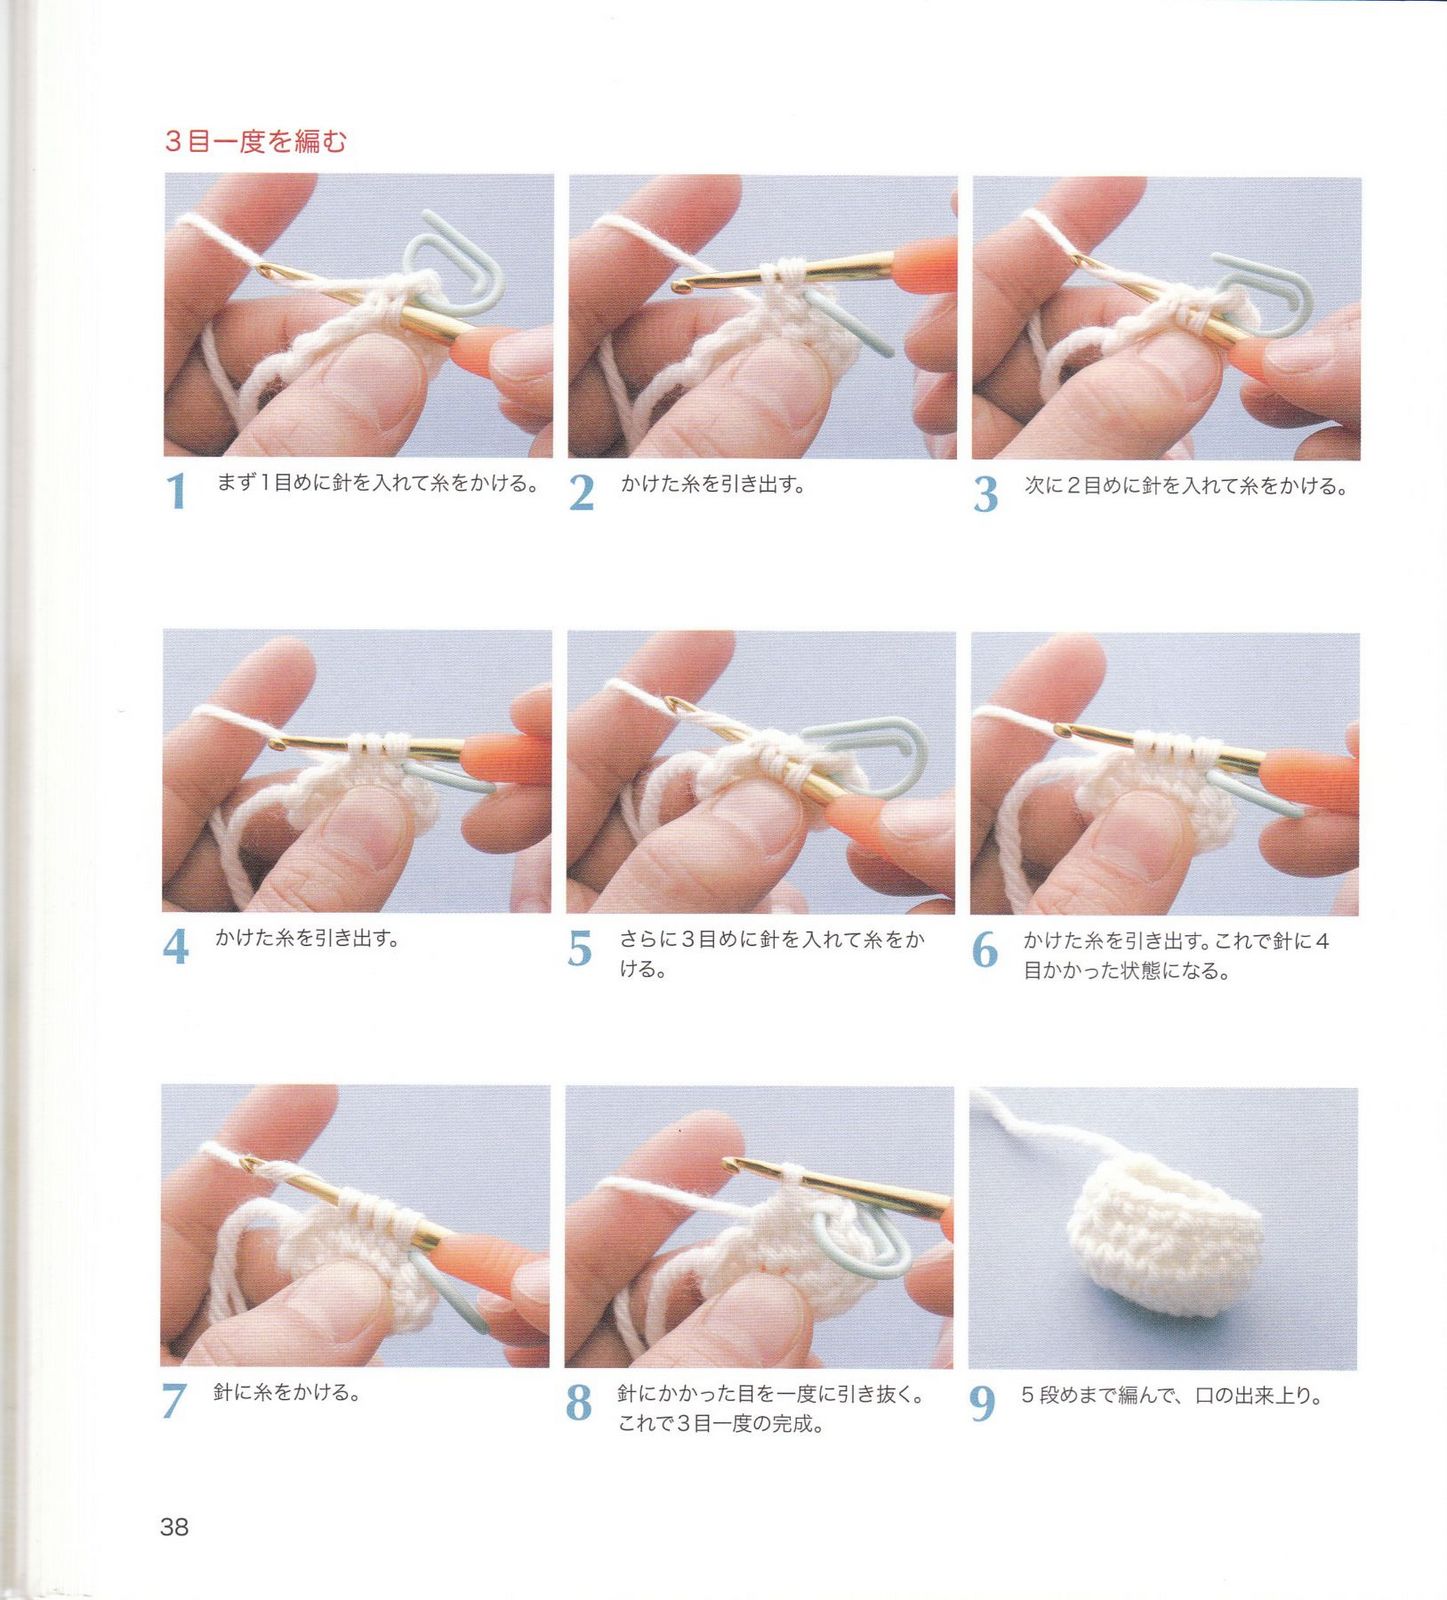 Уроки вязания крючком игрушки видео. Кольцо амигуруми. Вязание крючком для начинающих пошагово. Что такое кольцо амигуруми в вязании. Амигуруми крючком для начинающих.